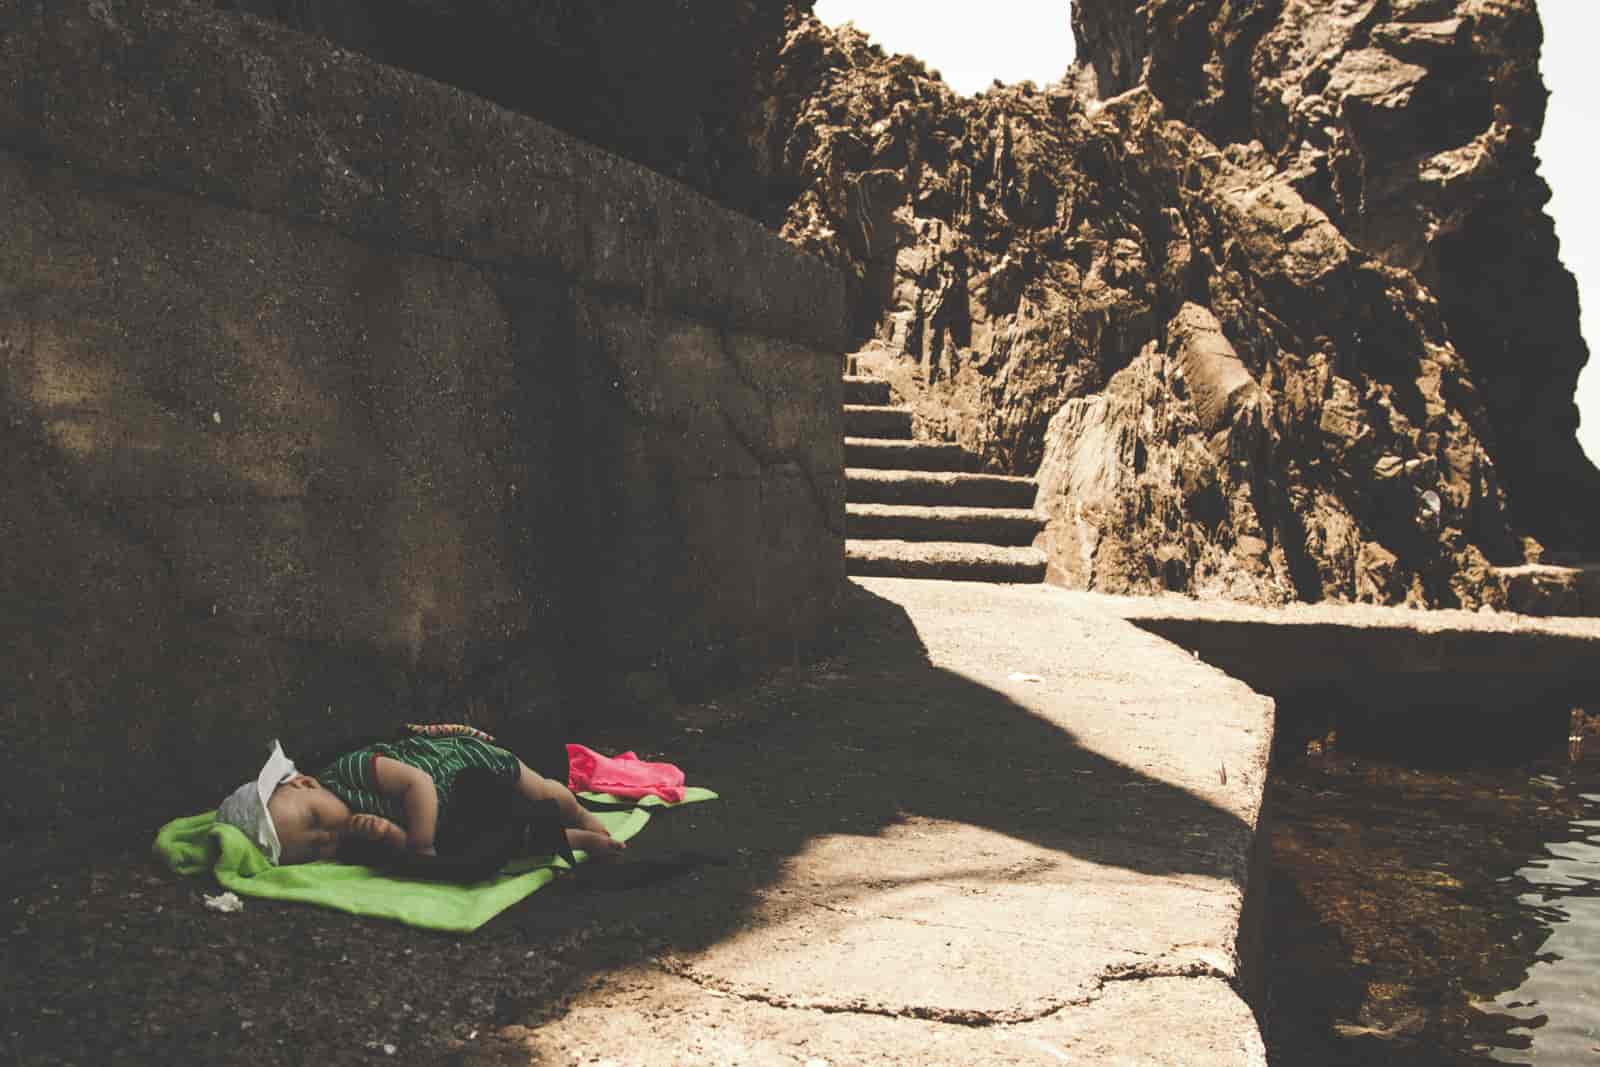 wypoczynek dziecka nad wodą w cieniu skał